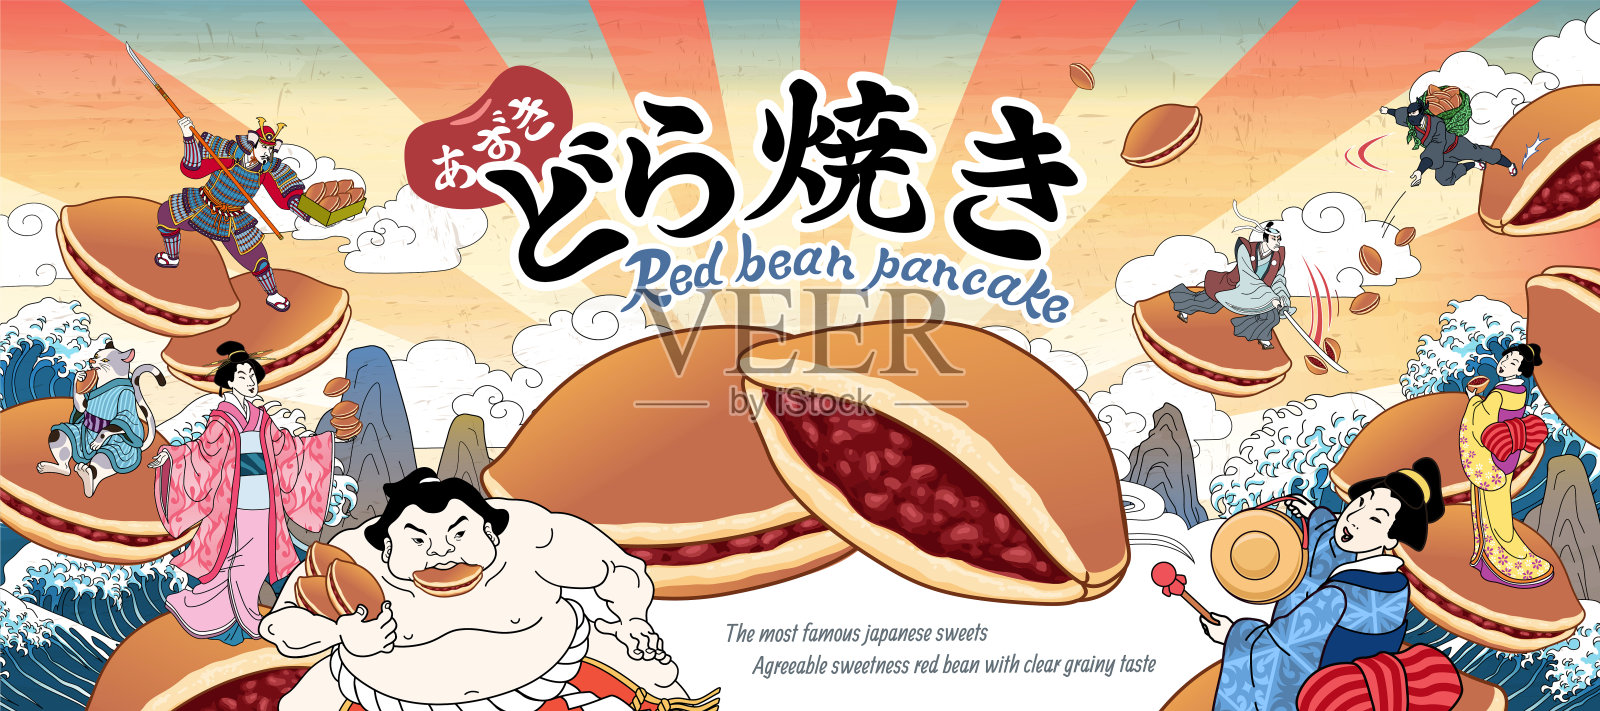 日本浮世绘红烧广告插画图片素材